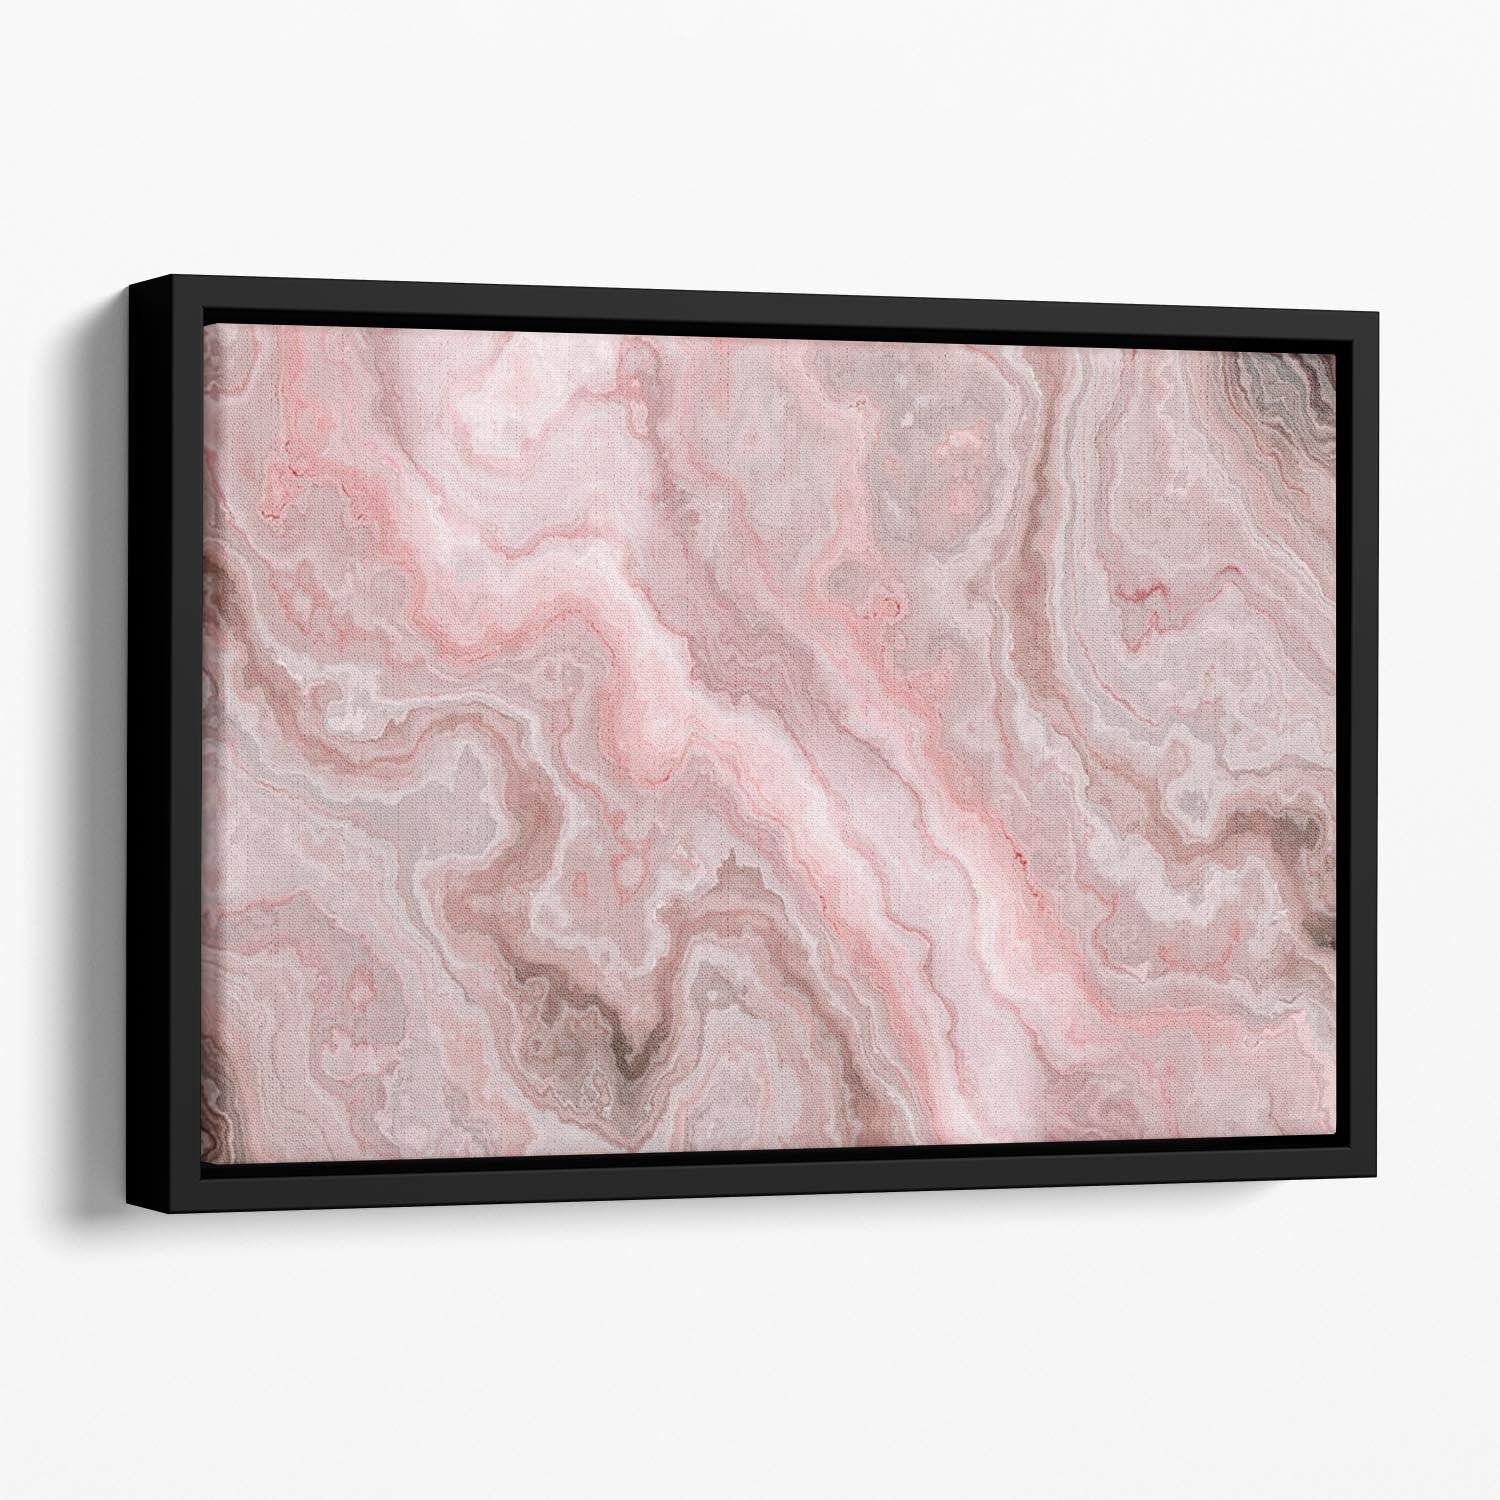 Rose Marble Floating Framed Canvas - Canvas Art Rocks - 1